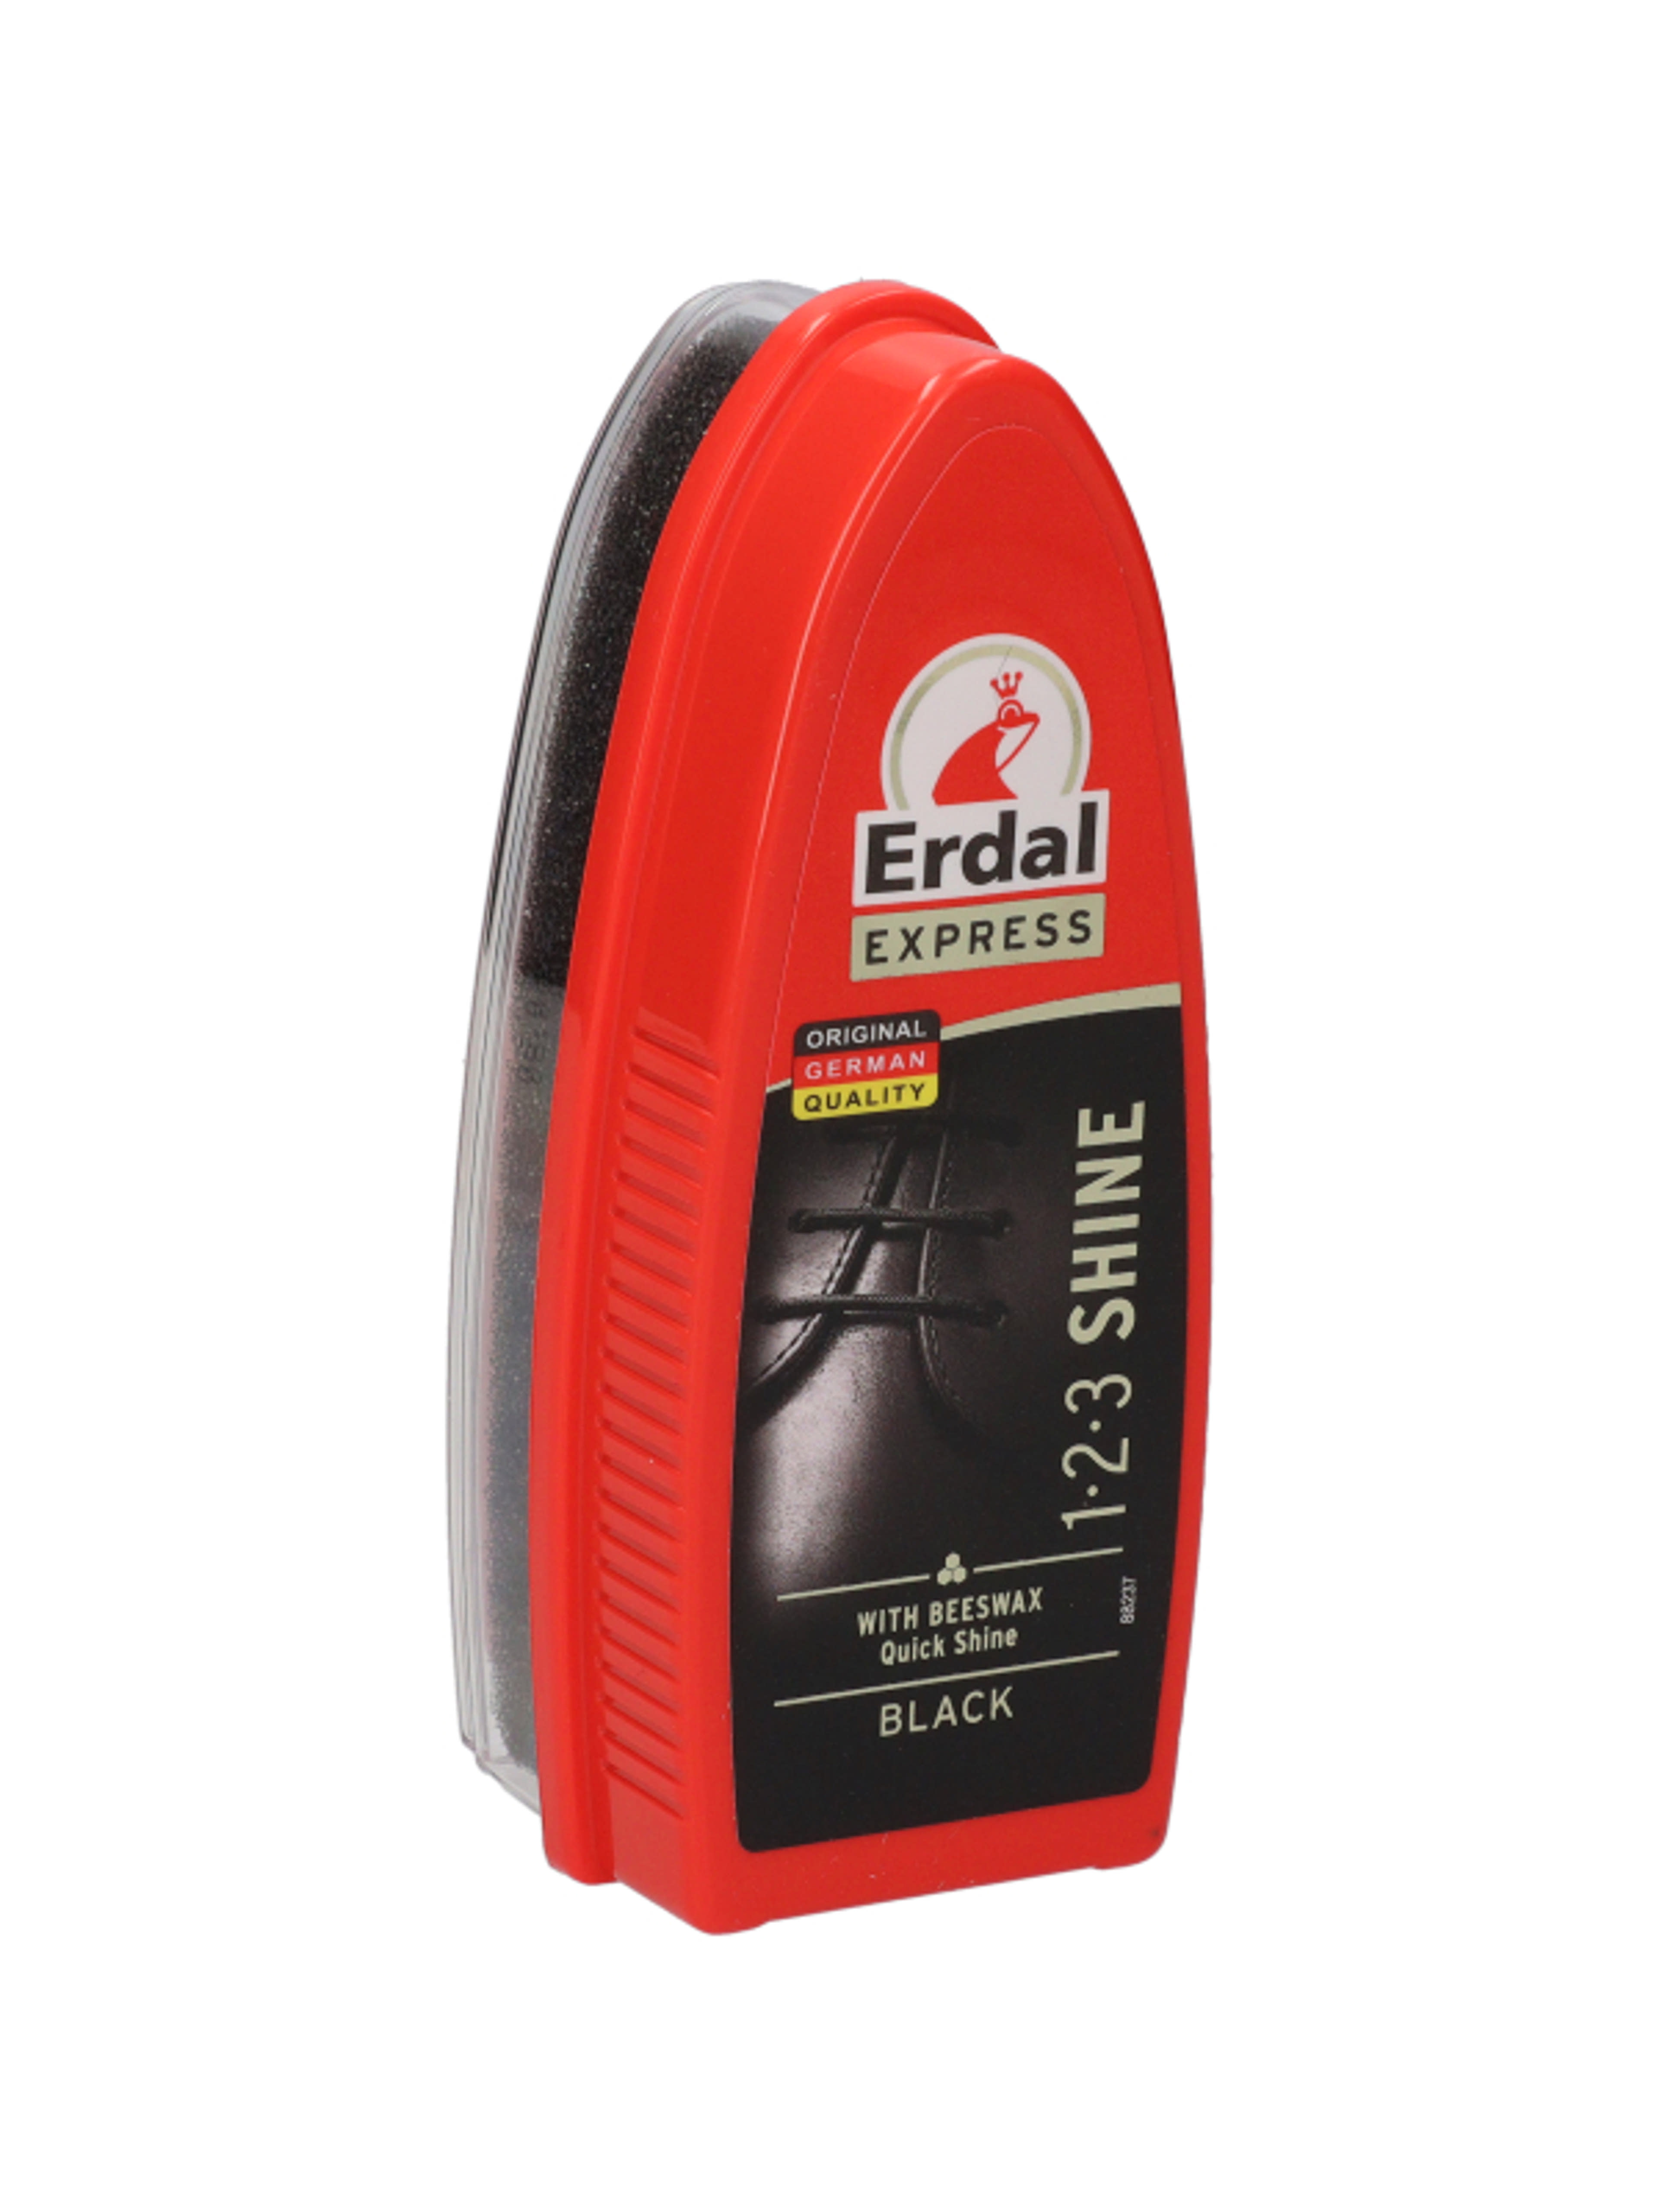 Erdal Express 1-2-3 gyorsfény cipőfényező szivacs - 1 db-6